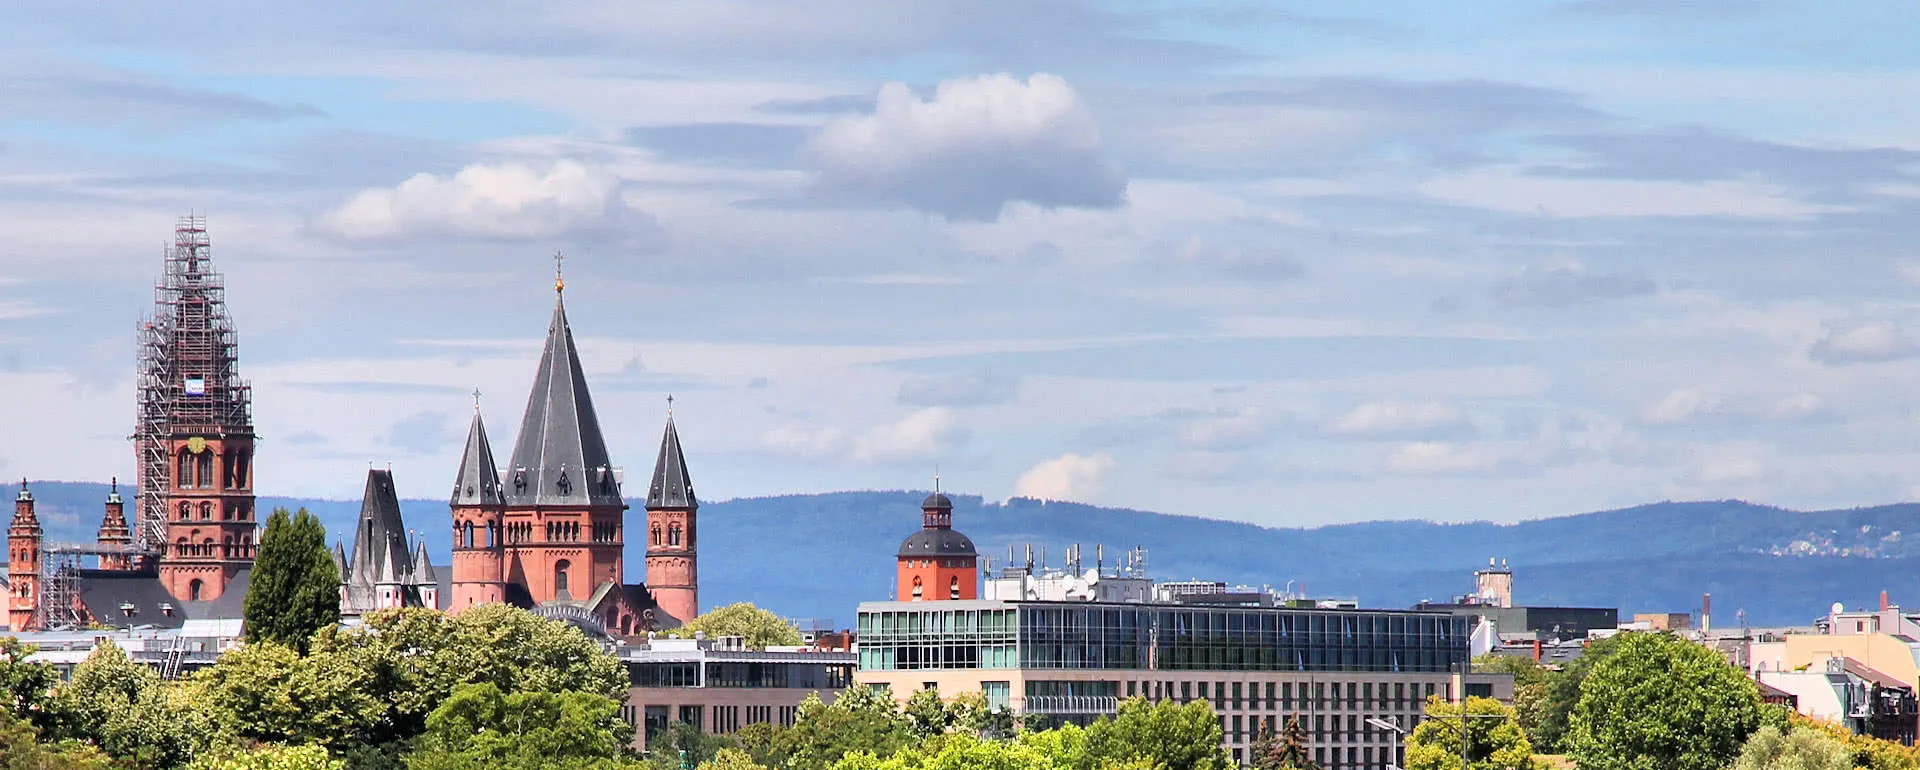 Mainz Panorama Bild